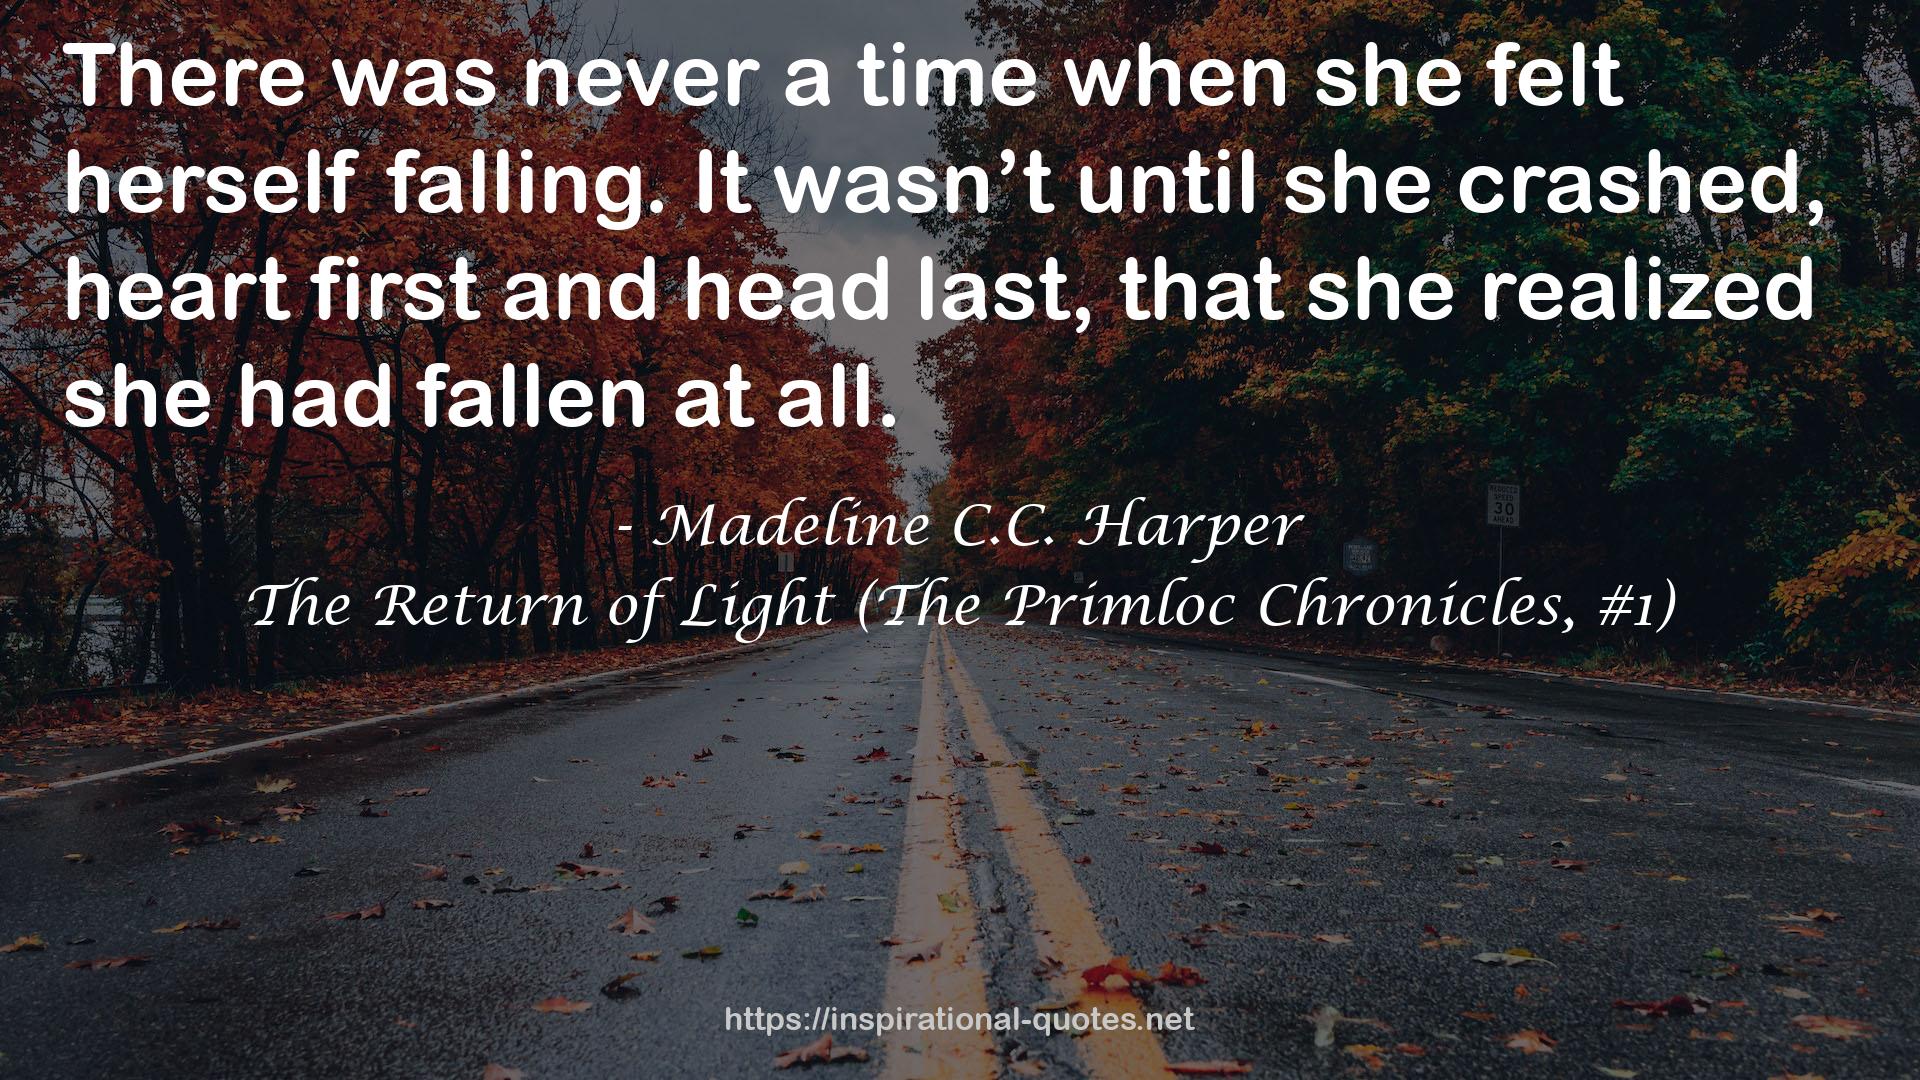 Madeline C.C. Harper QUOTES